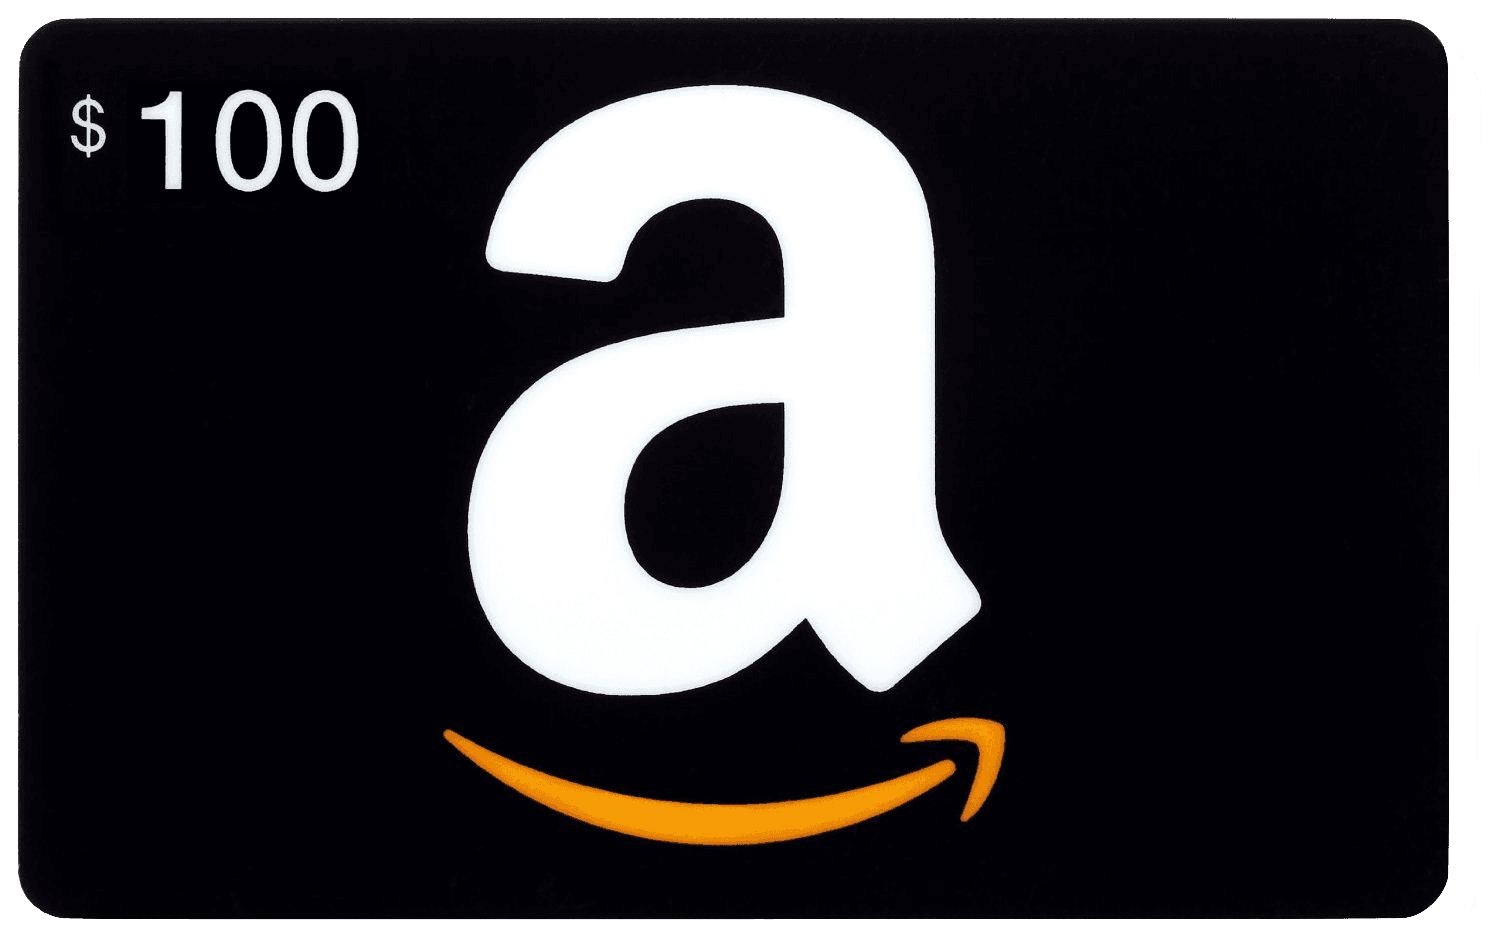 بطاقة هدايا أمازون Amazon US $ 100 للستور الأمريكي